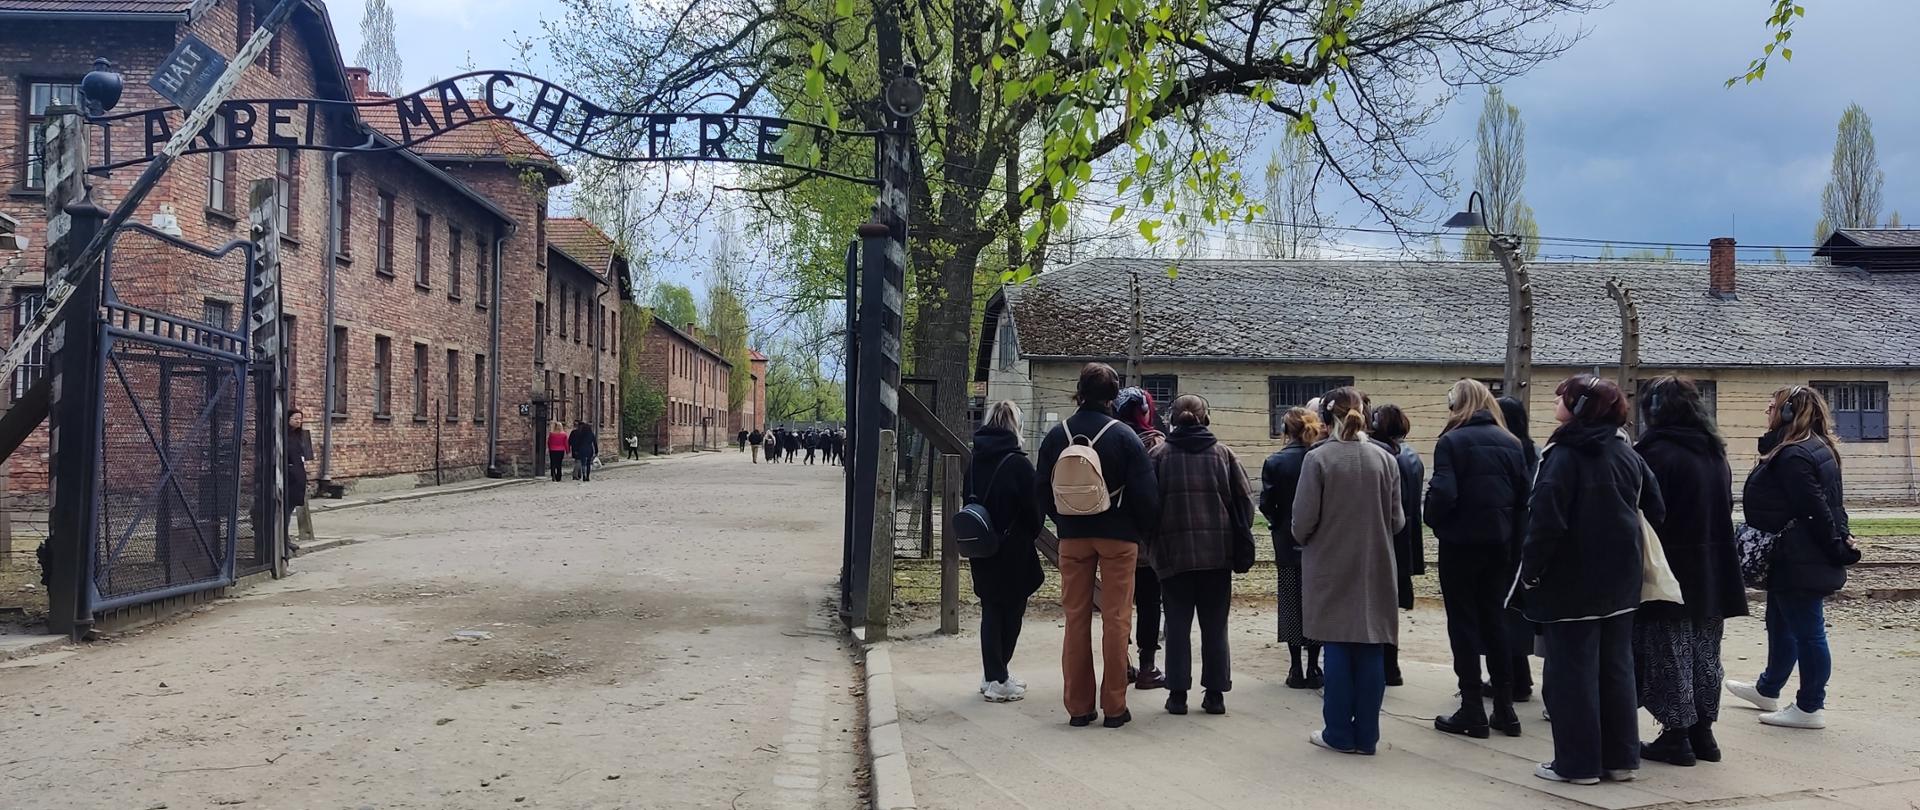 Wejście na teren byłego obozu koncentracyjnego Auschwitz, brama z napisem "Arbeit macht frei", przed bramą grupa zwiedzających